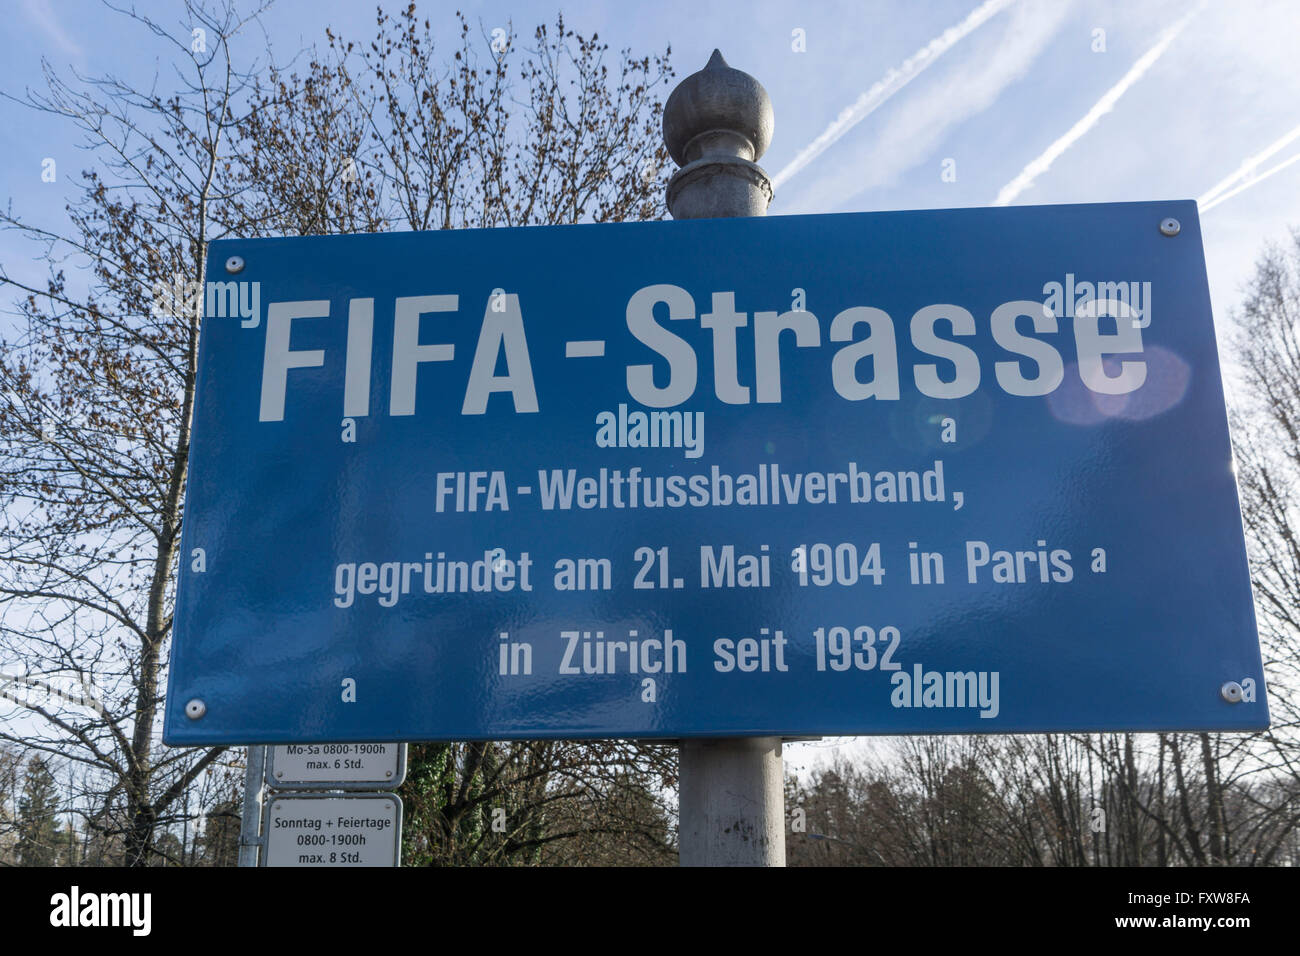 Fifa Street, Fédération Internationale de Football Association, Zurich Foto de stock